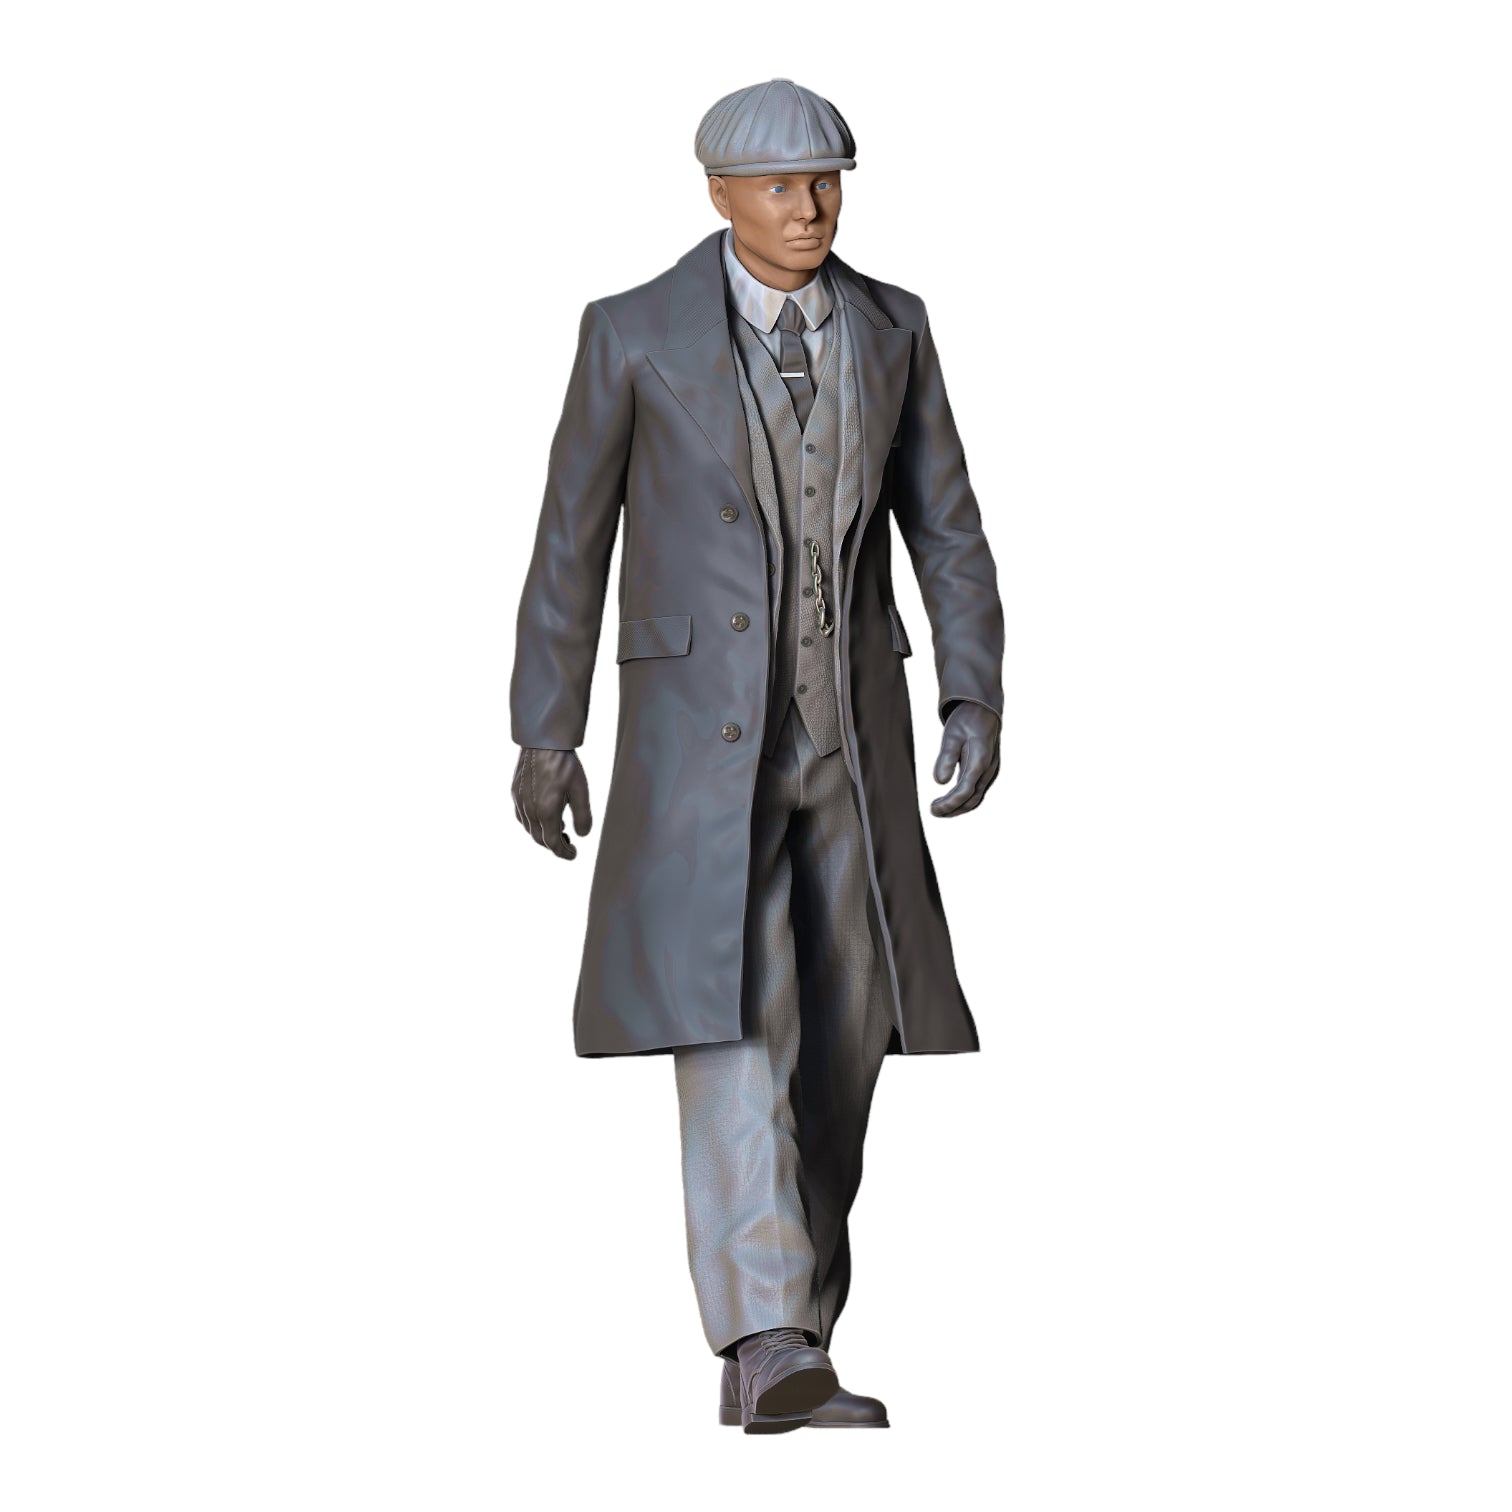 Produktfoto Diorama und Modellbau Miniatur Figur: Mafiosi: Mafia Gangster 4